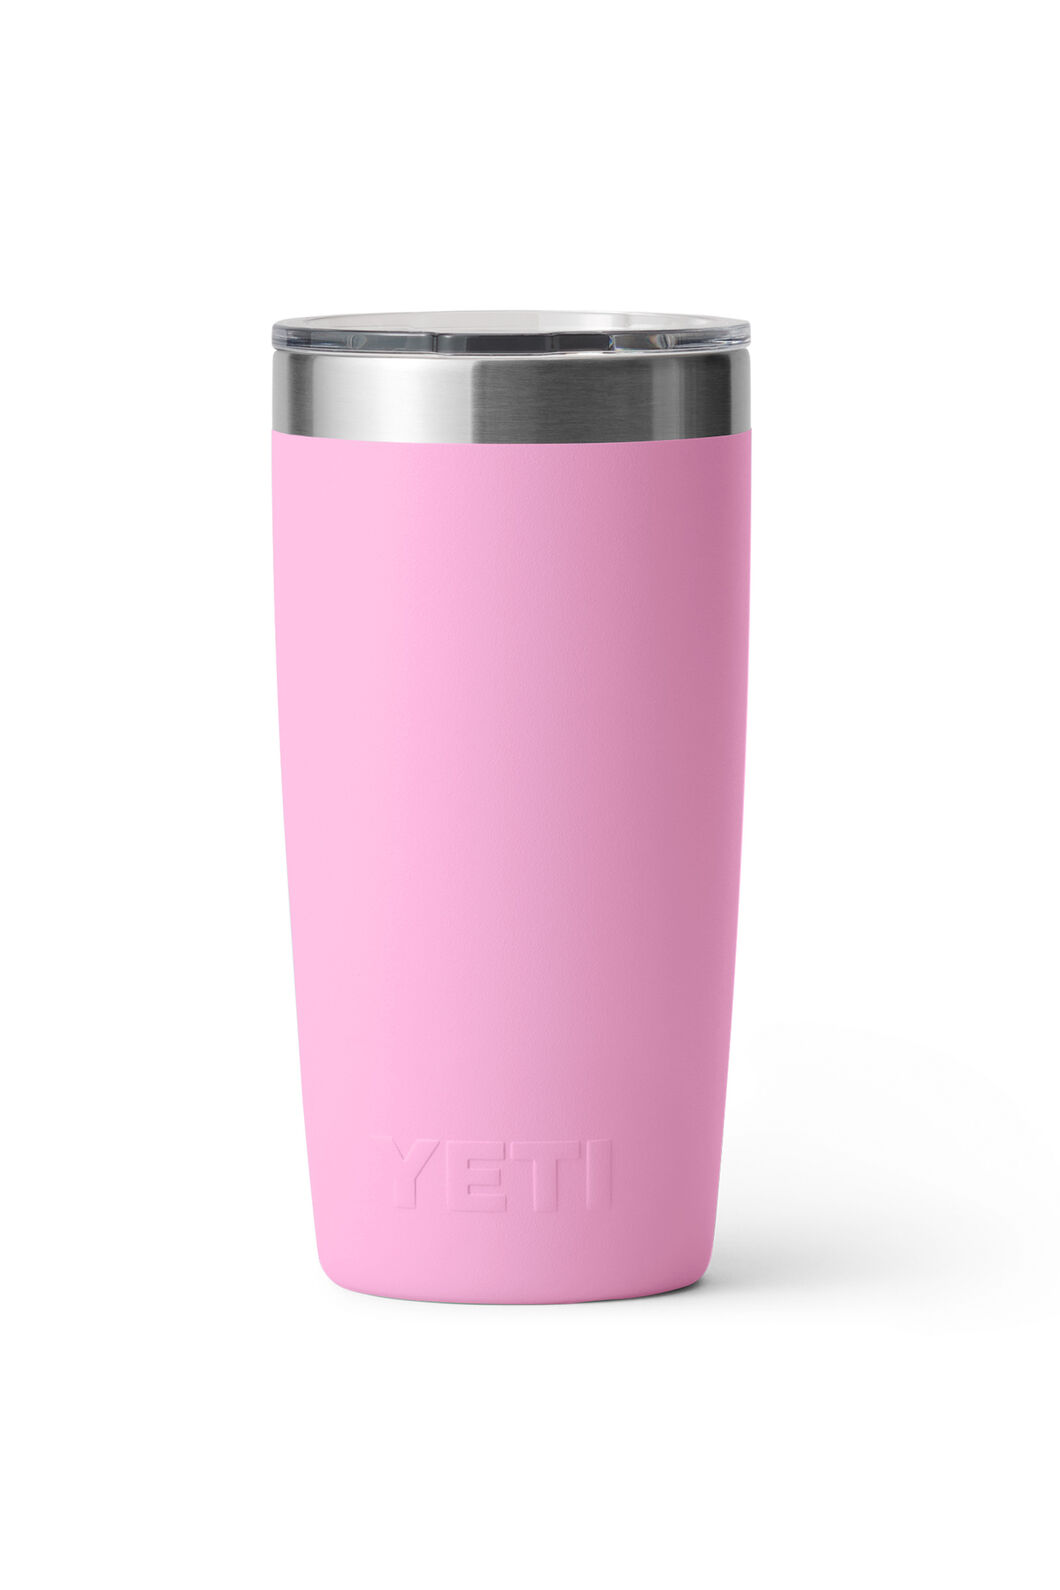 Yeti - Rambler 10 oz Tumbler - Power Pink